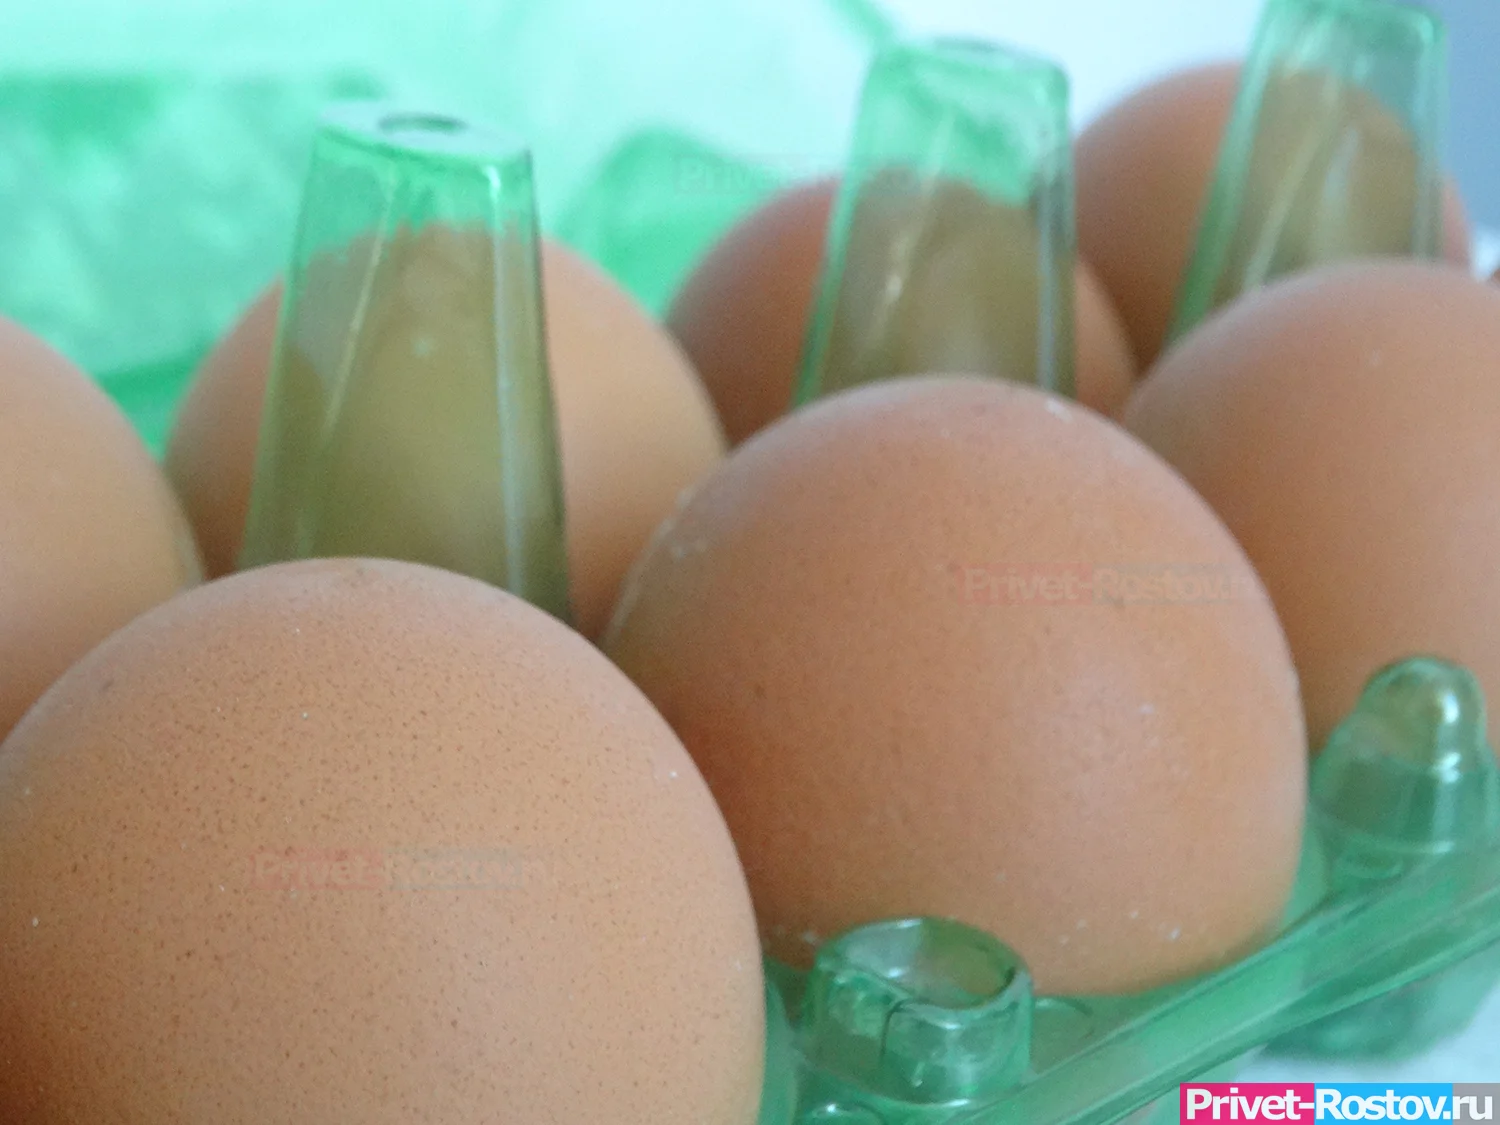 Яйца резко подорожали в Ростовской области вслед за курятиной в августе